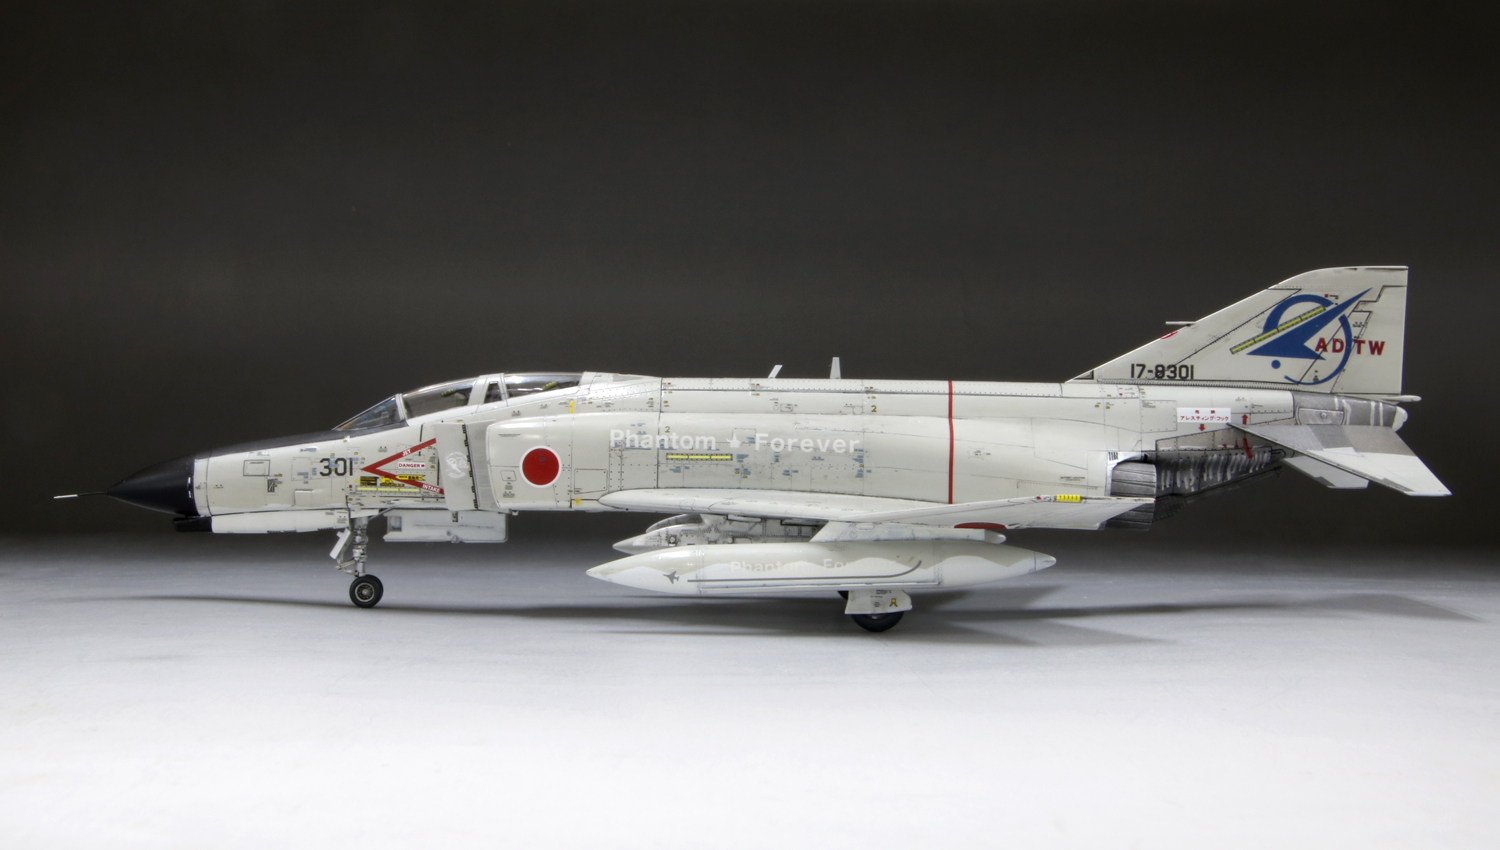 ファインモールド F-4EJ 301号機ファイナル